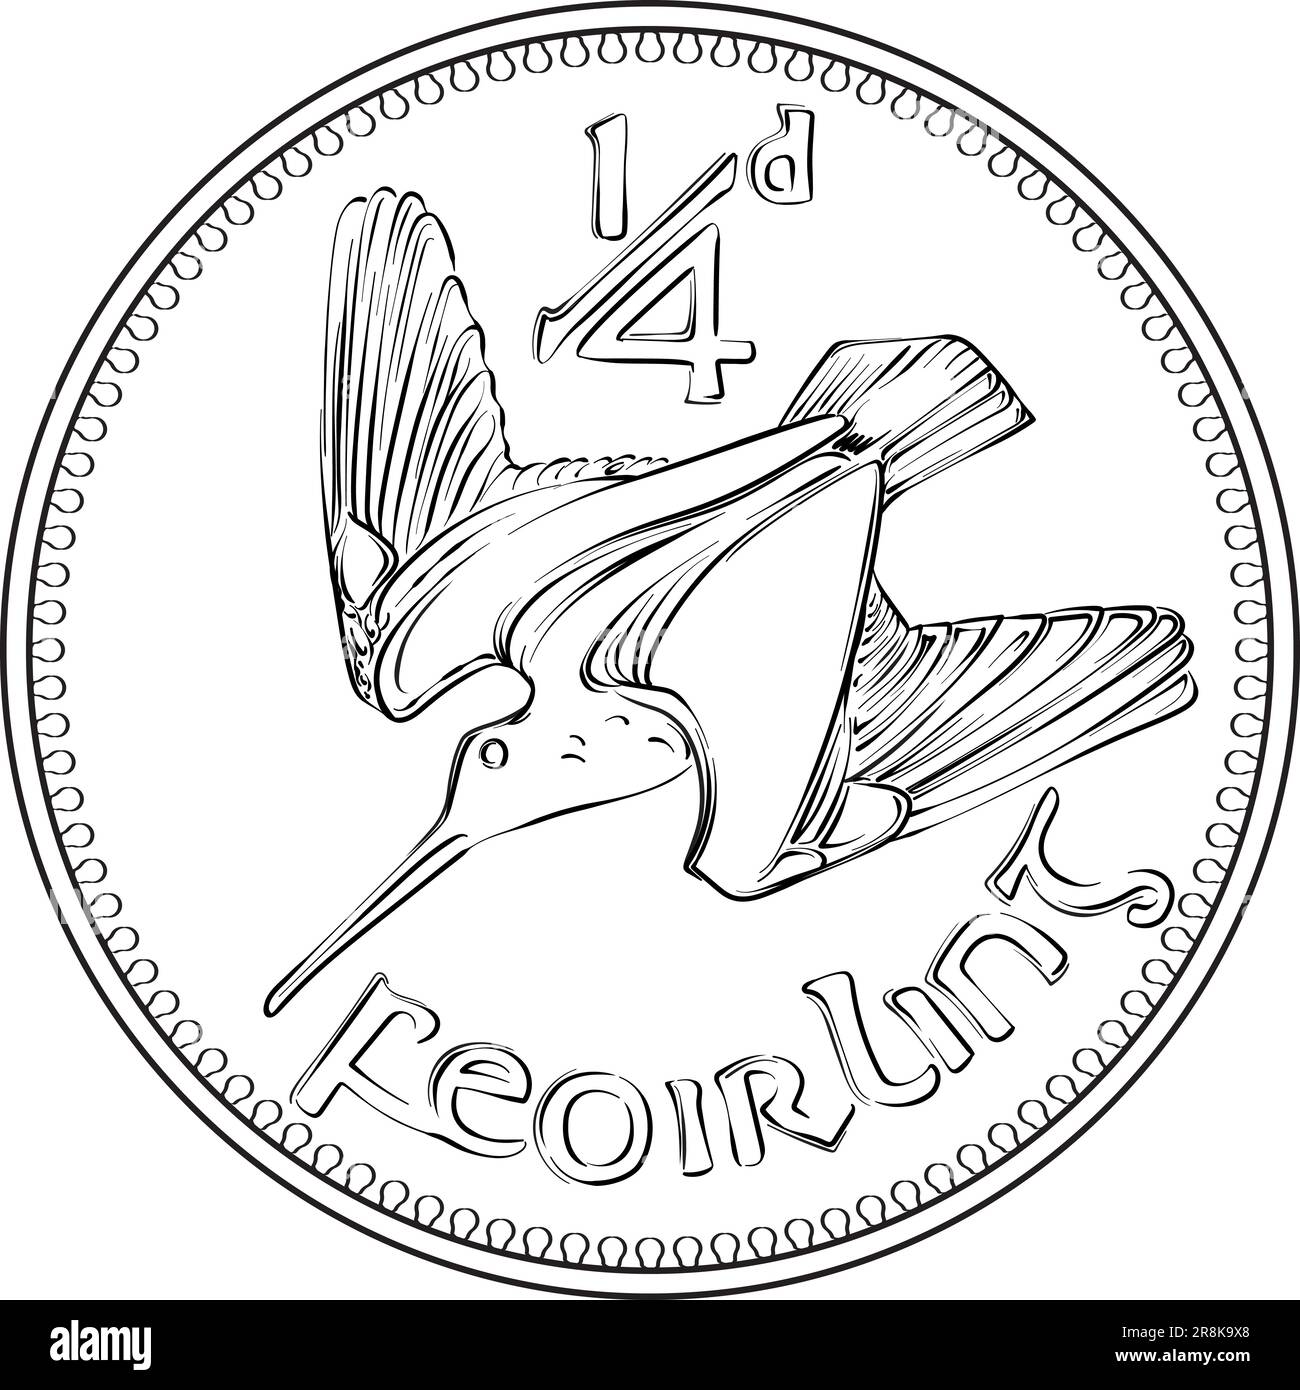 Irish Money la pièce d'or pré-décimale Farthing avec woodcock au verso. Image en noir et blanc Illustration de Vecteur